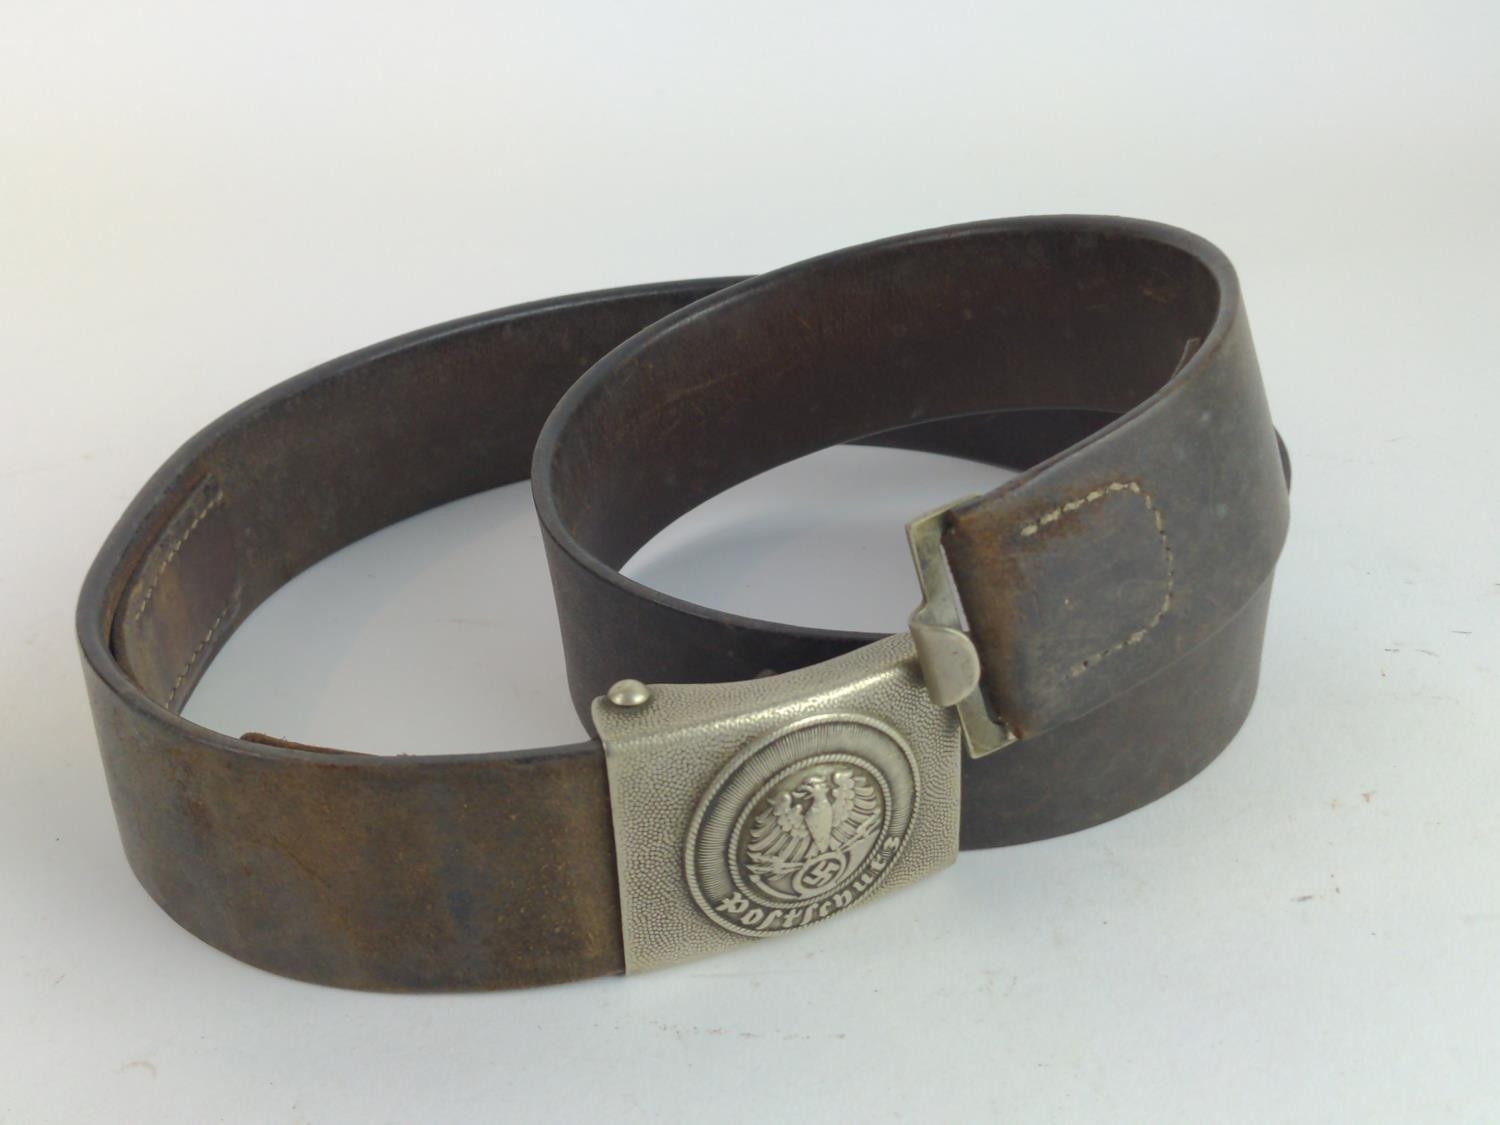 German Third Reich Postschutz (postal defence) belt and buckle  - Image 2 of 2